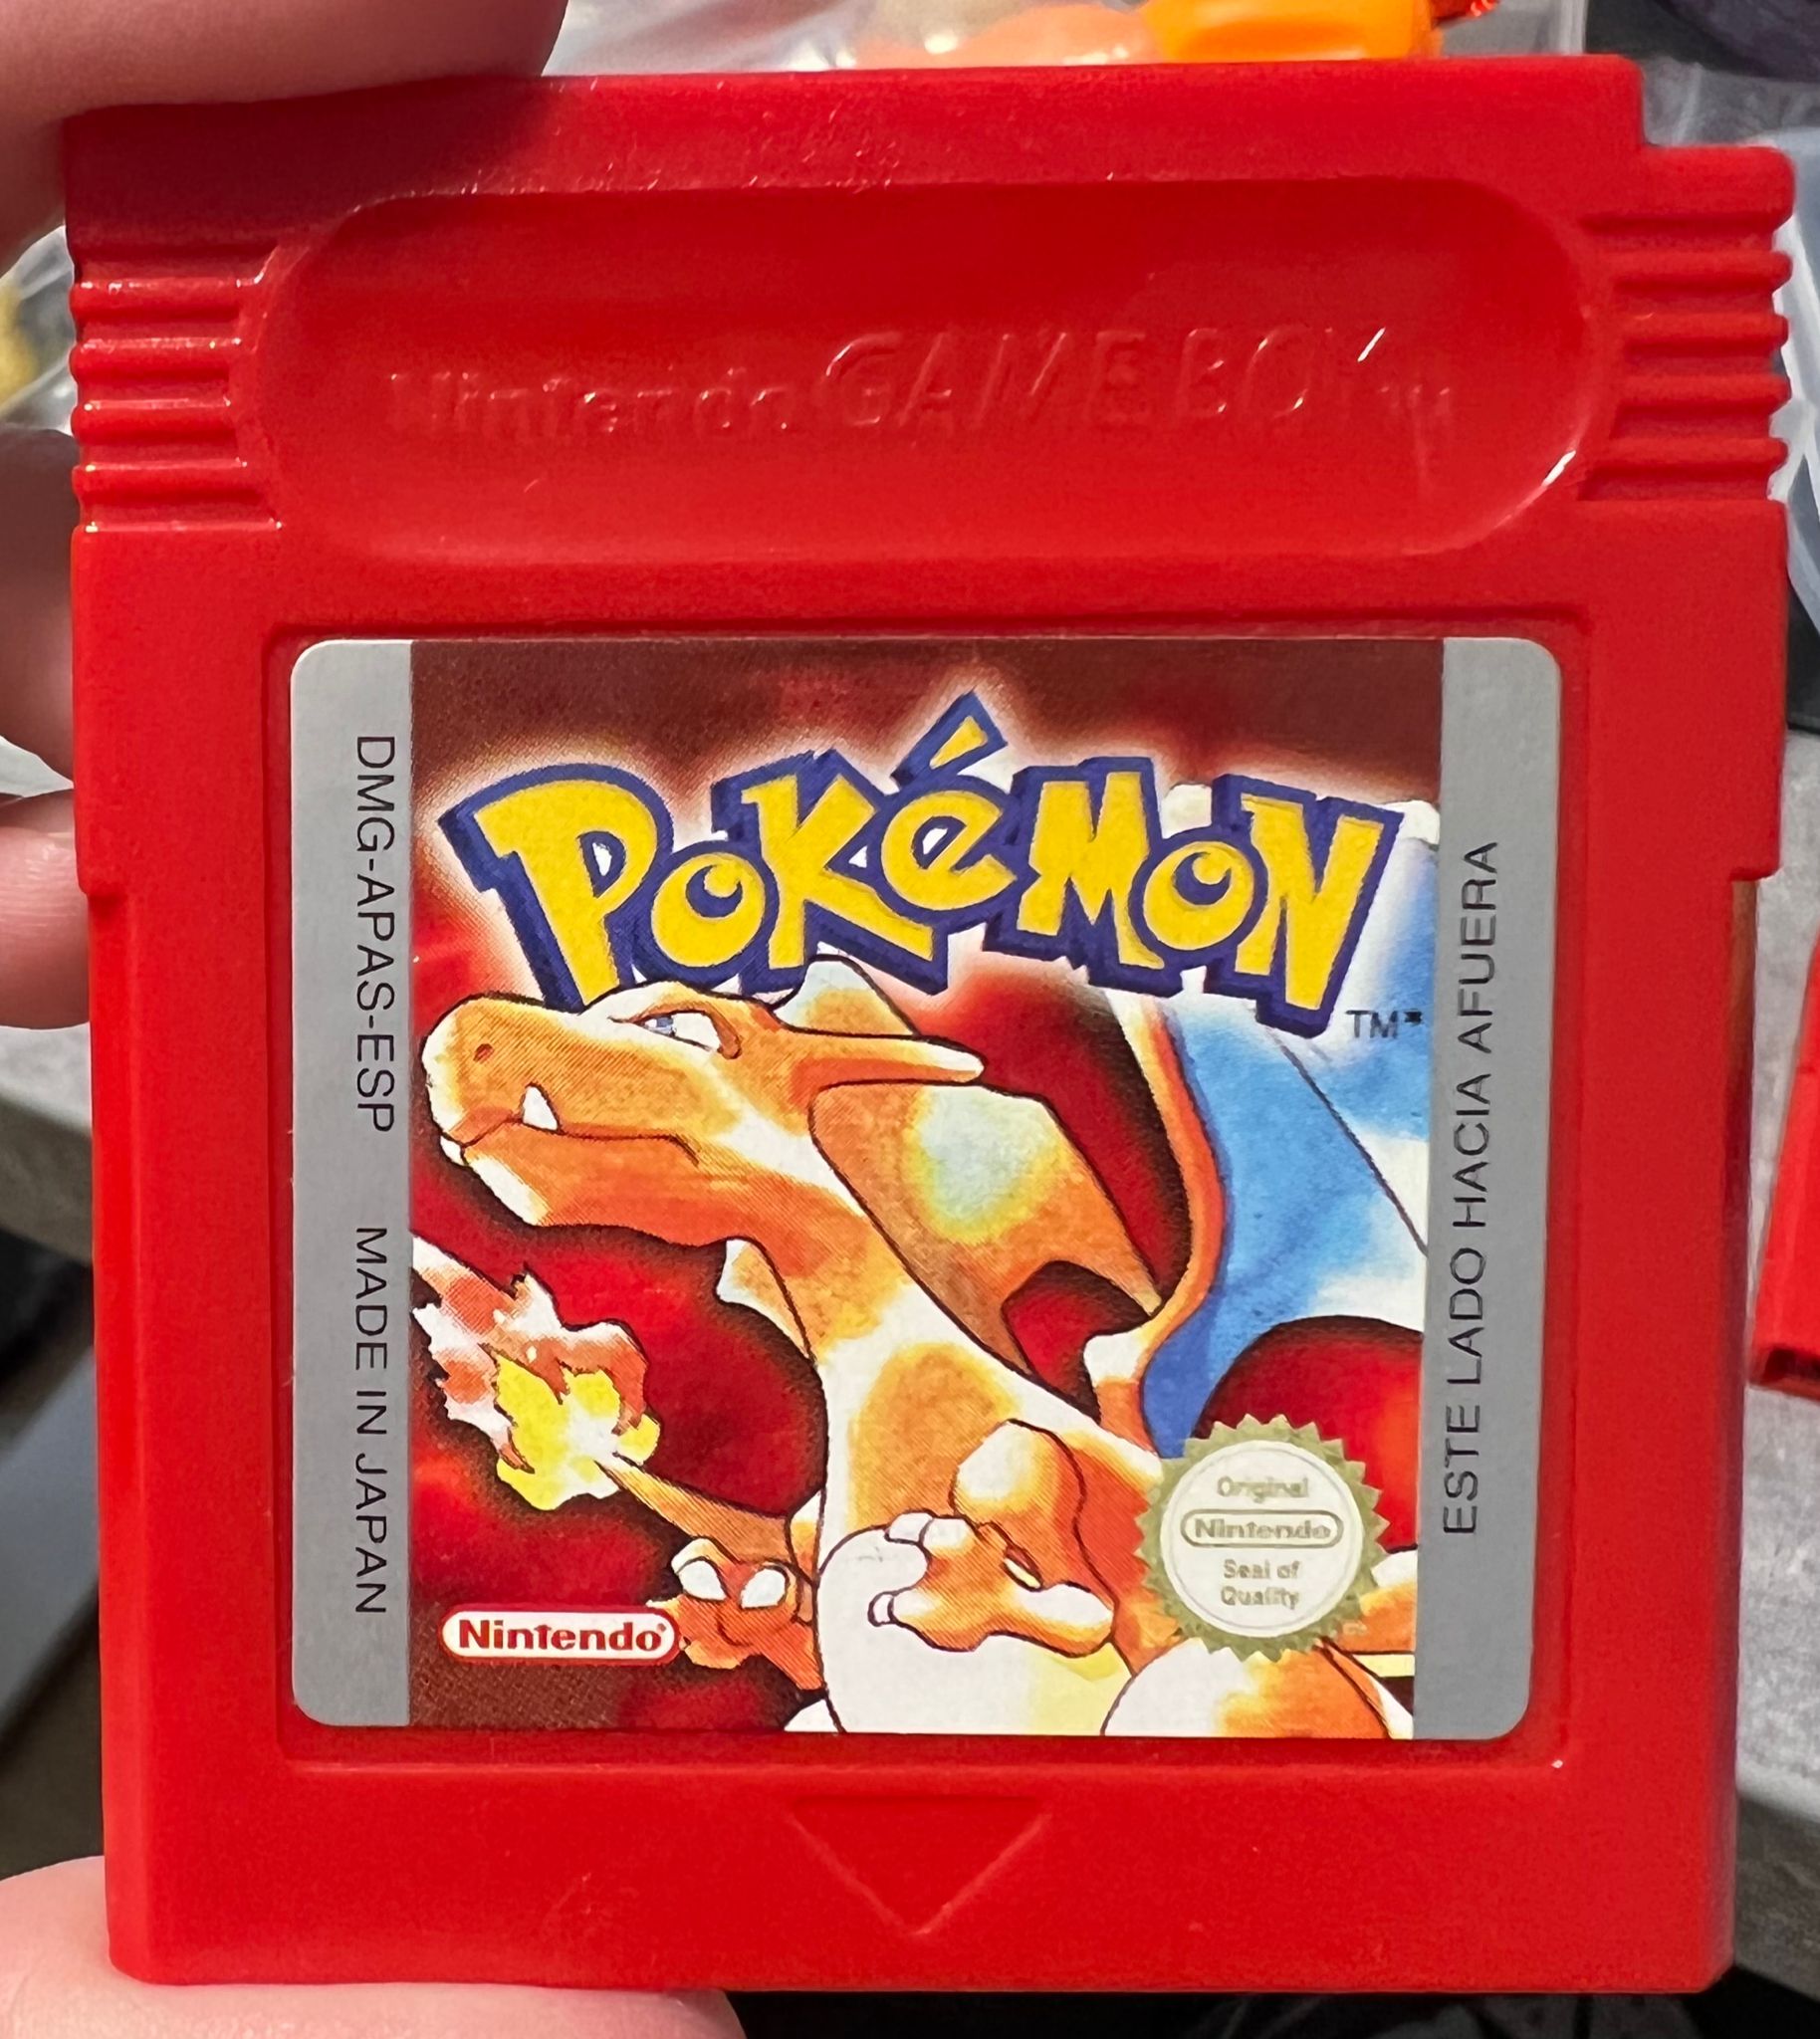 Cartuchos Pokémon Rojo Fuego y Verde Hoja, Pokemon Hispania